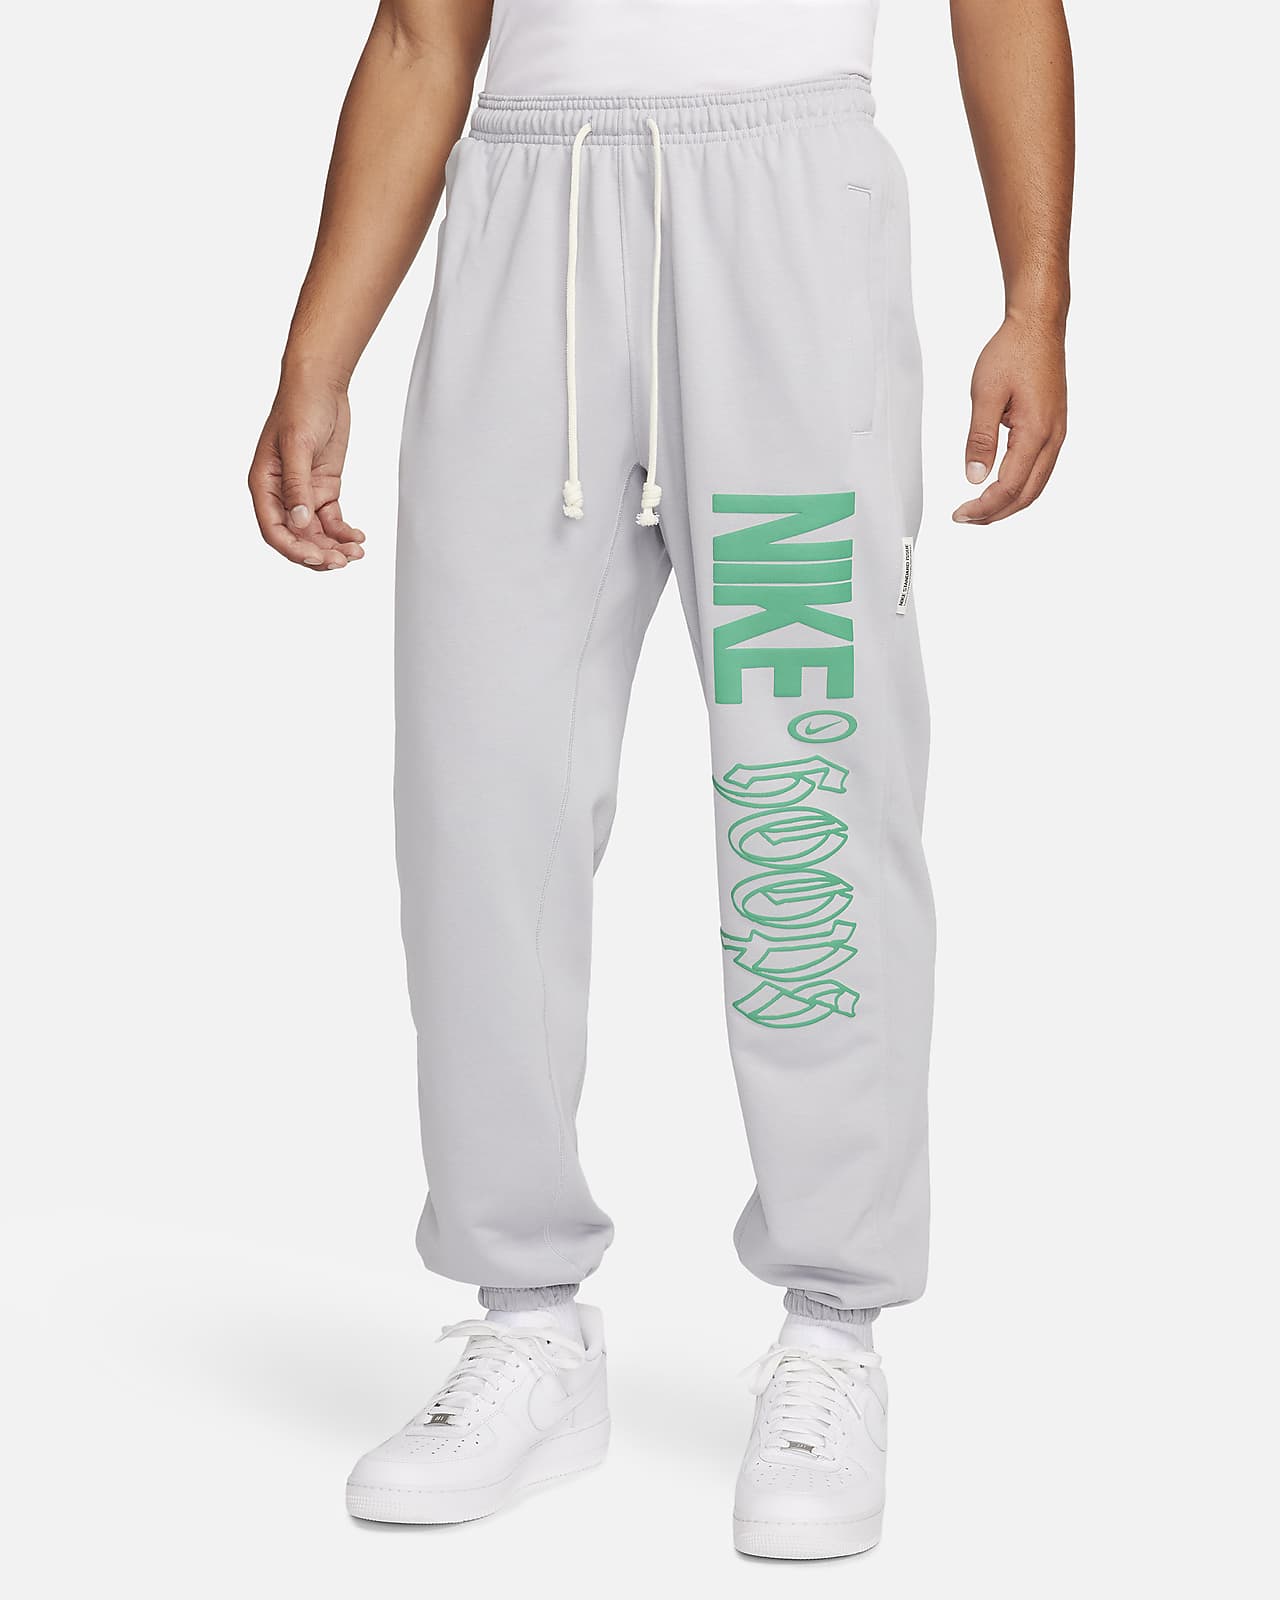 Calças Nike Sportswear Standard Issue pretas para homem - FN4904-010